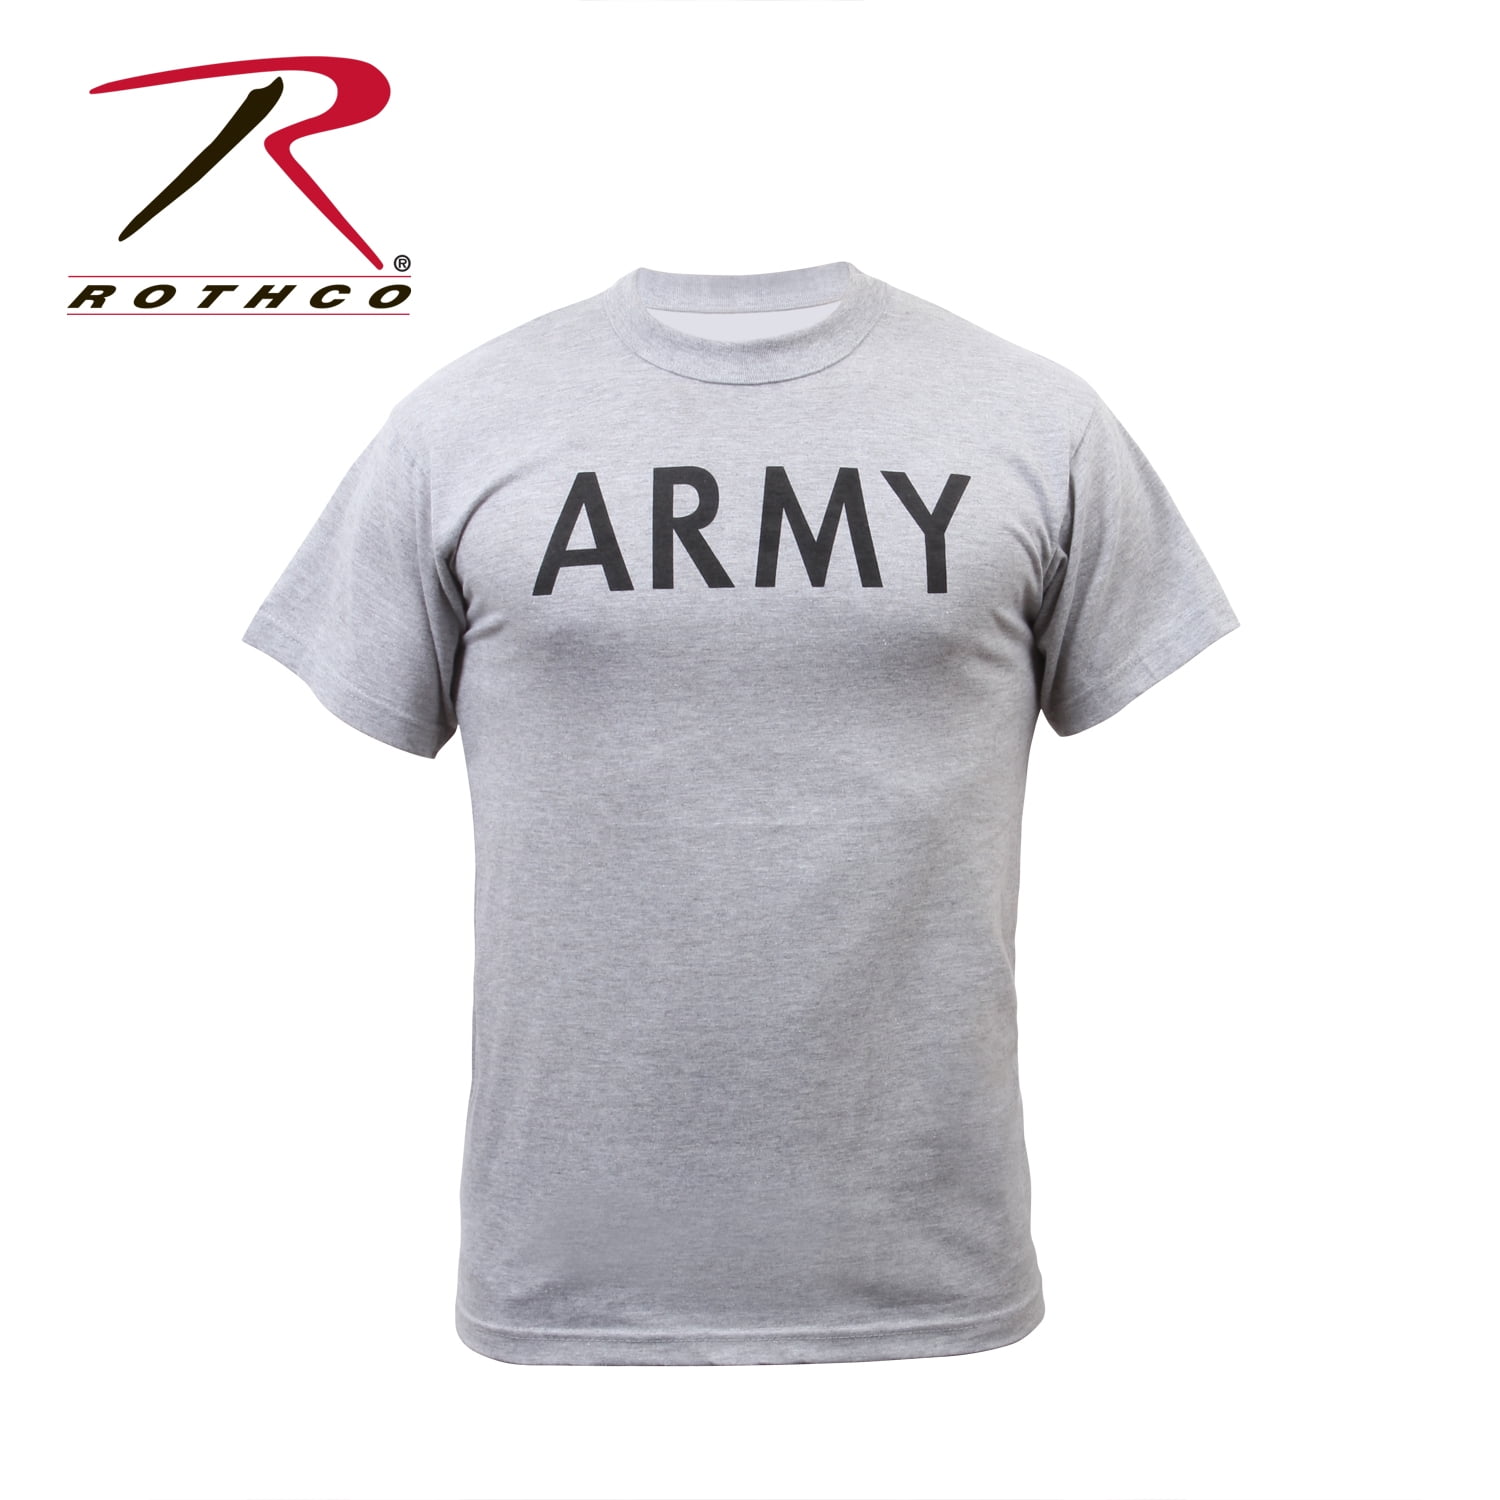 army t shirt grey